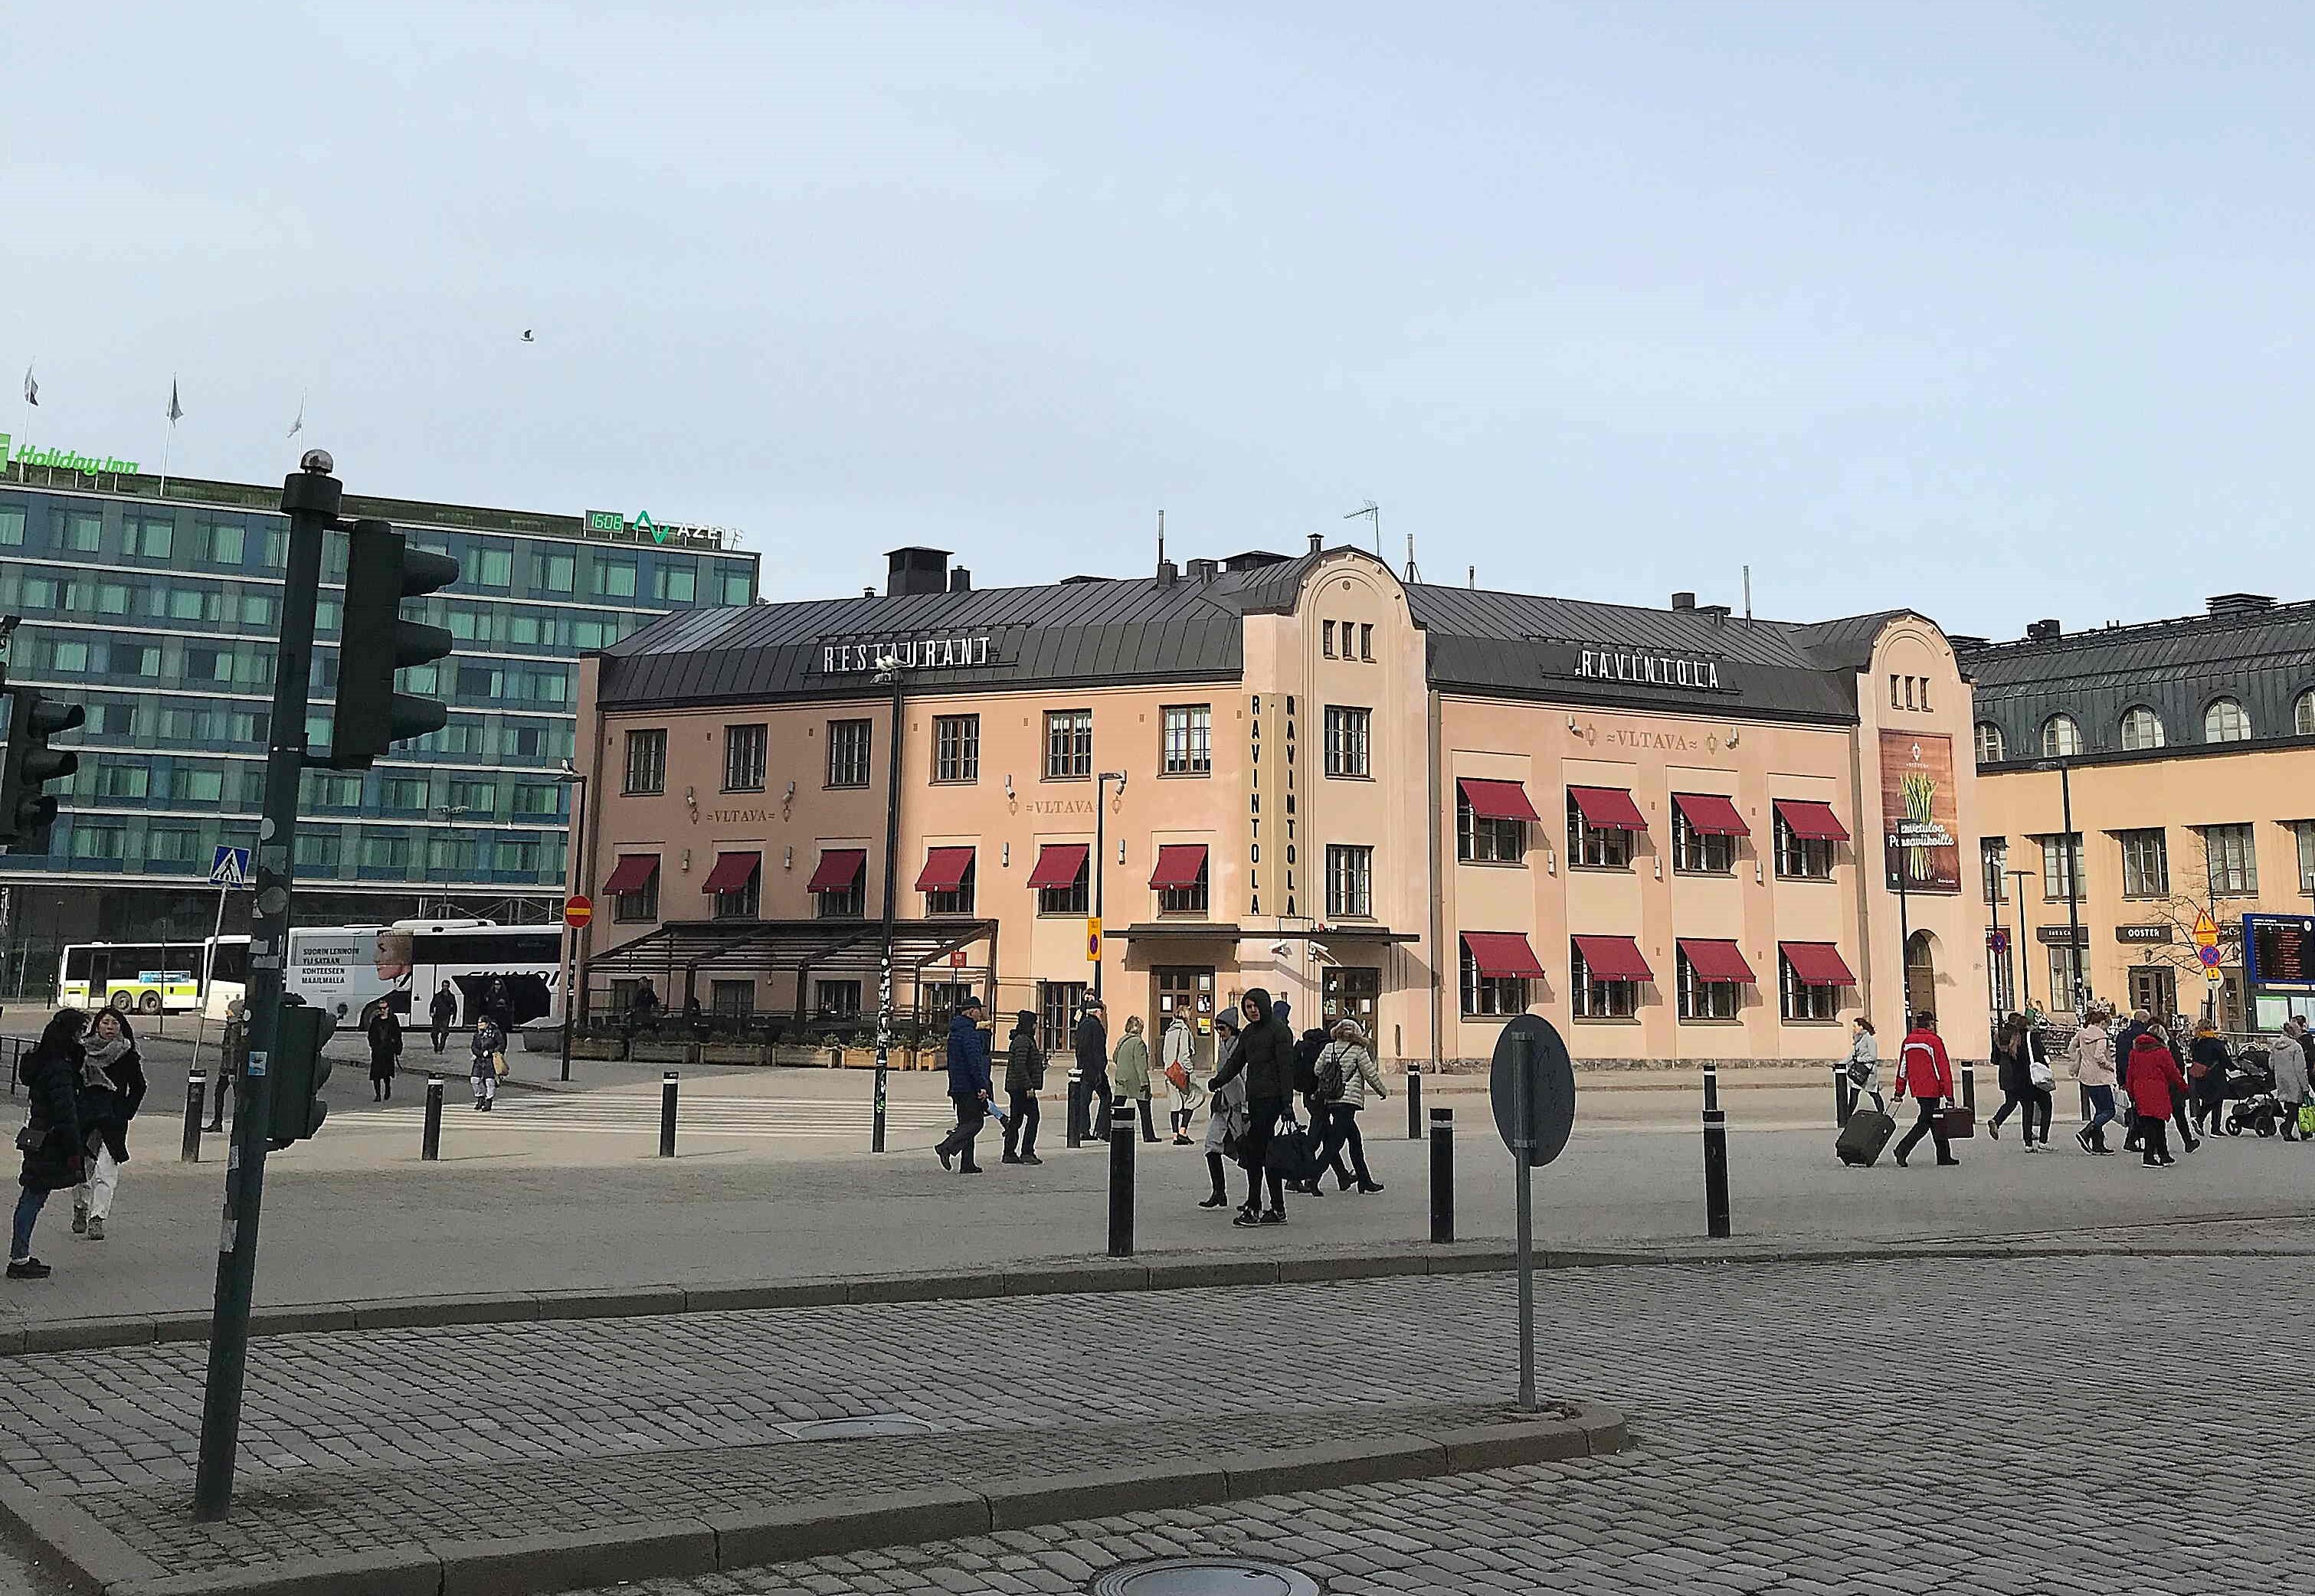  Eliel square, Helsinki